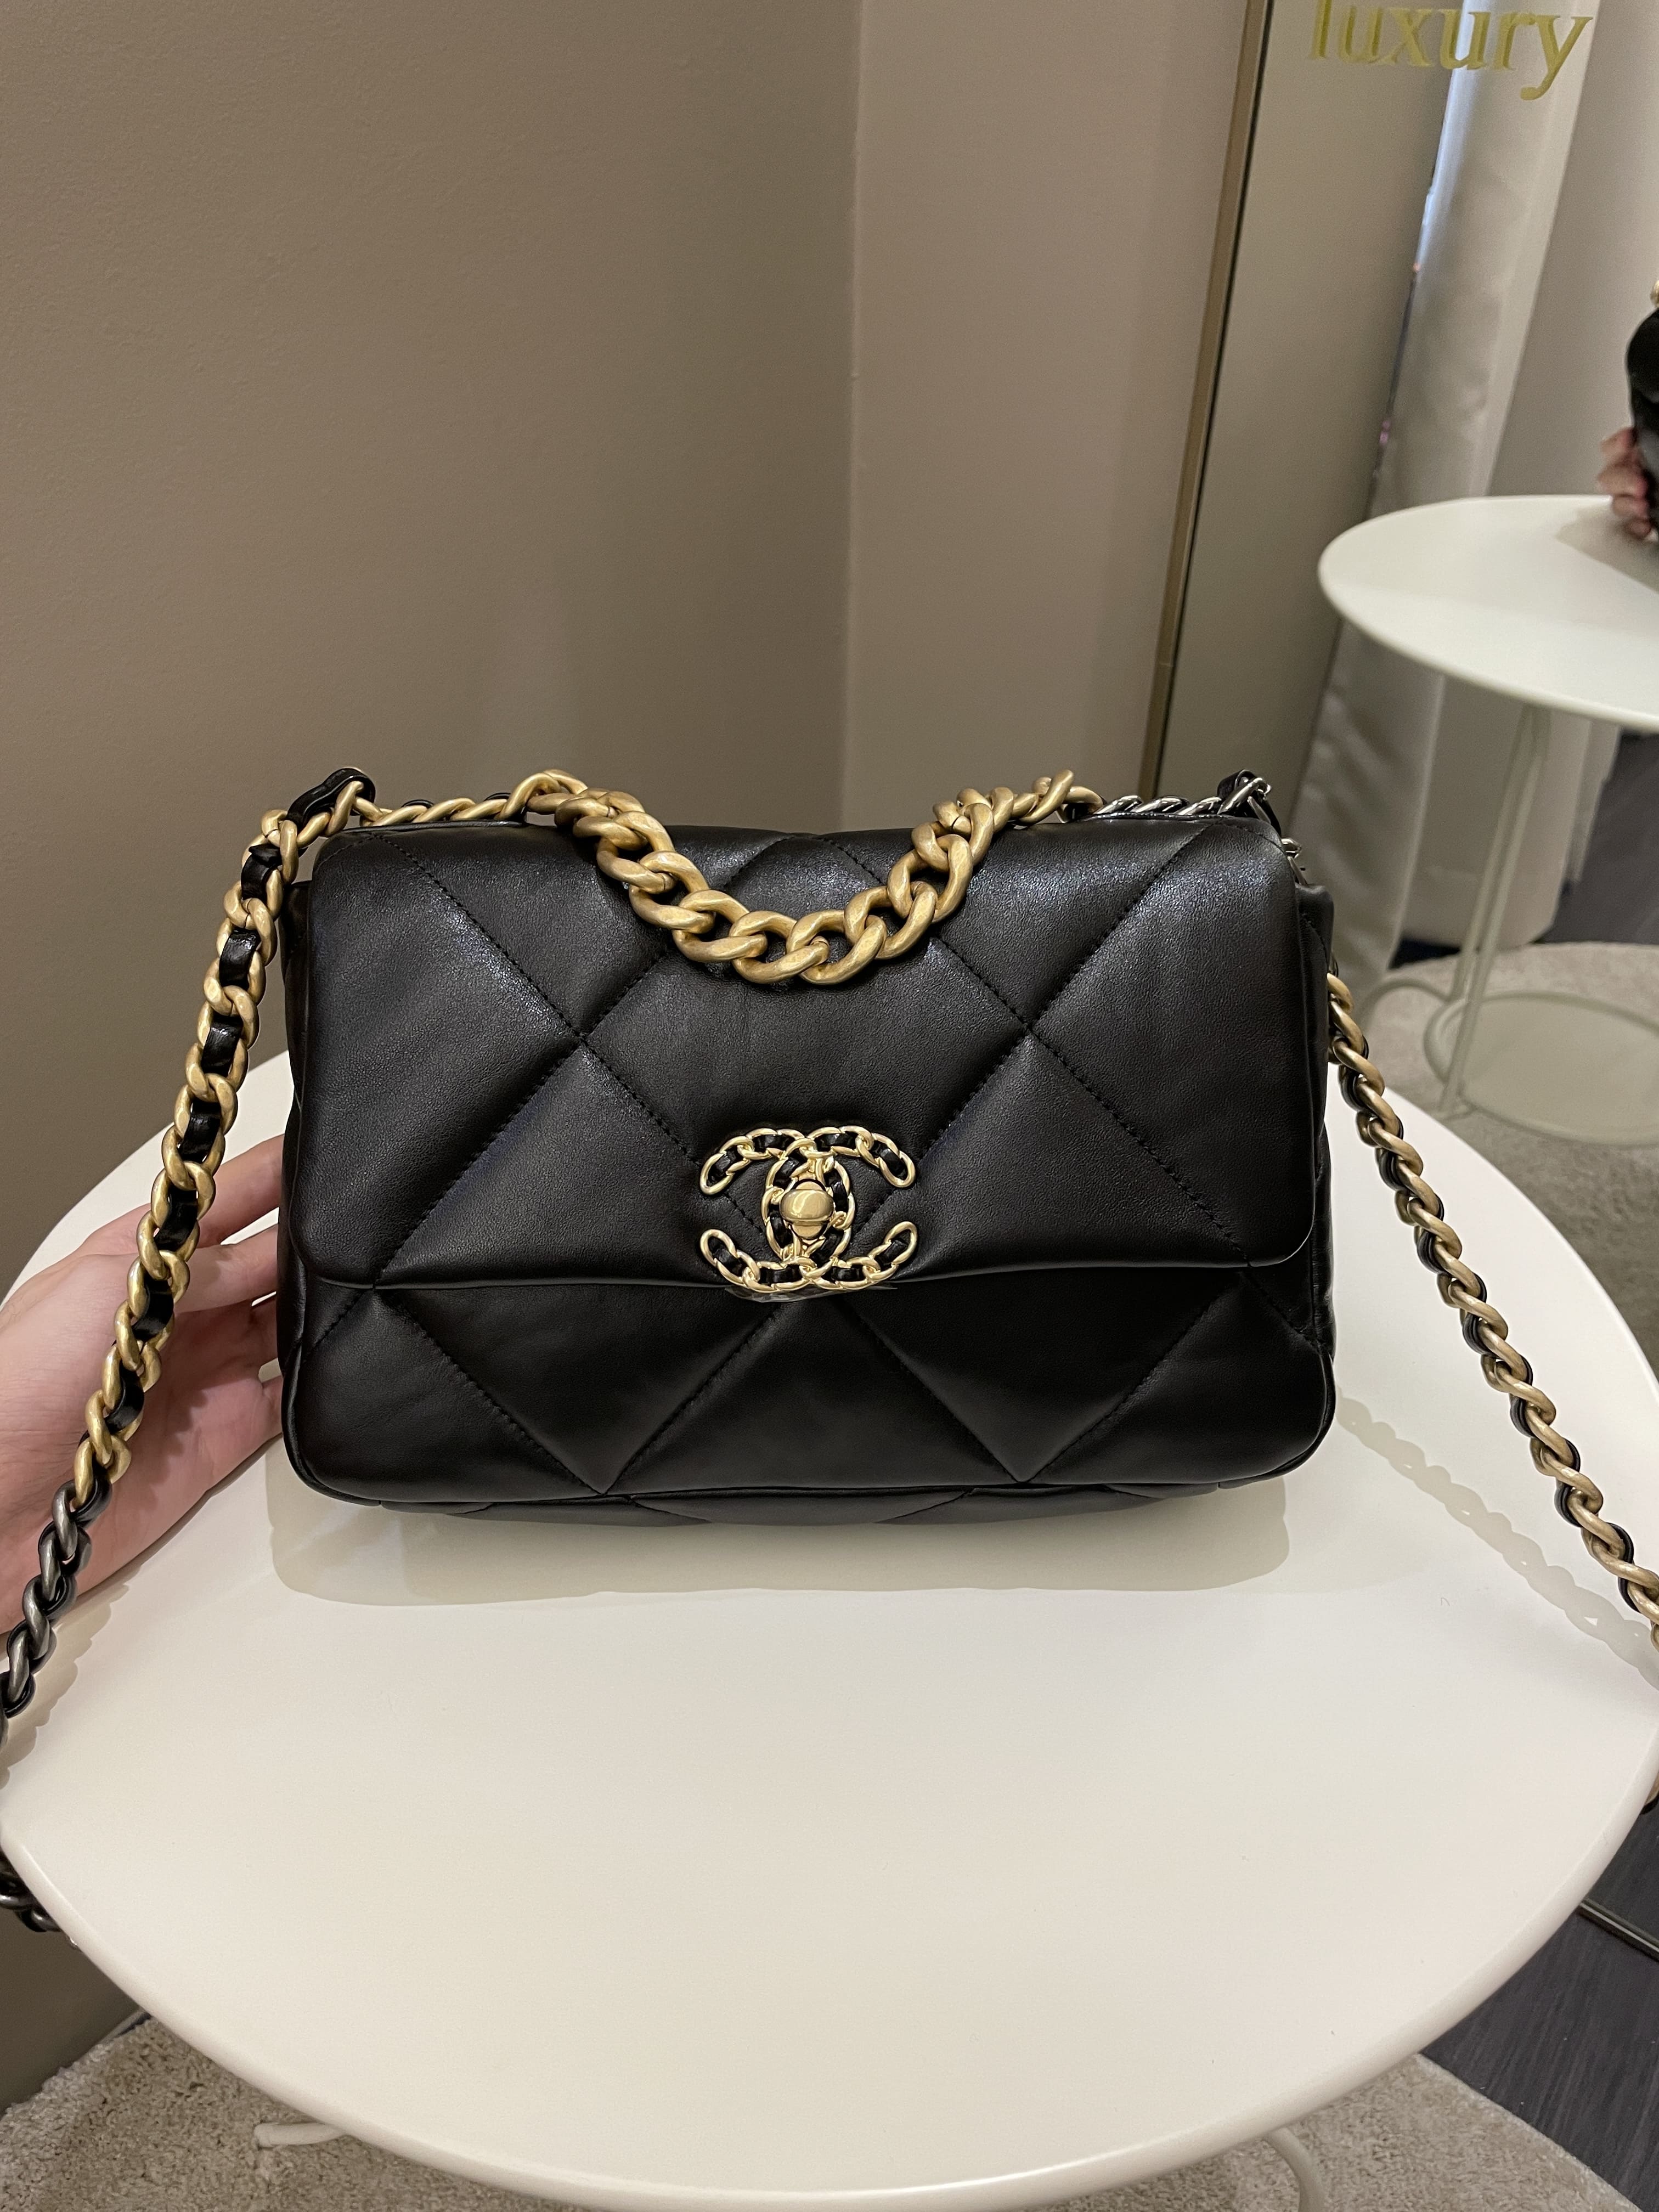 Chanel Chanel 19 Small Flap Bag in Black Lambskin | Dearluxe